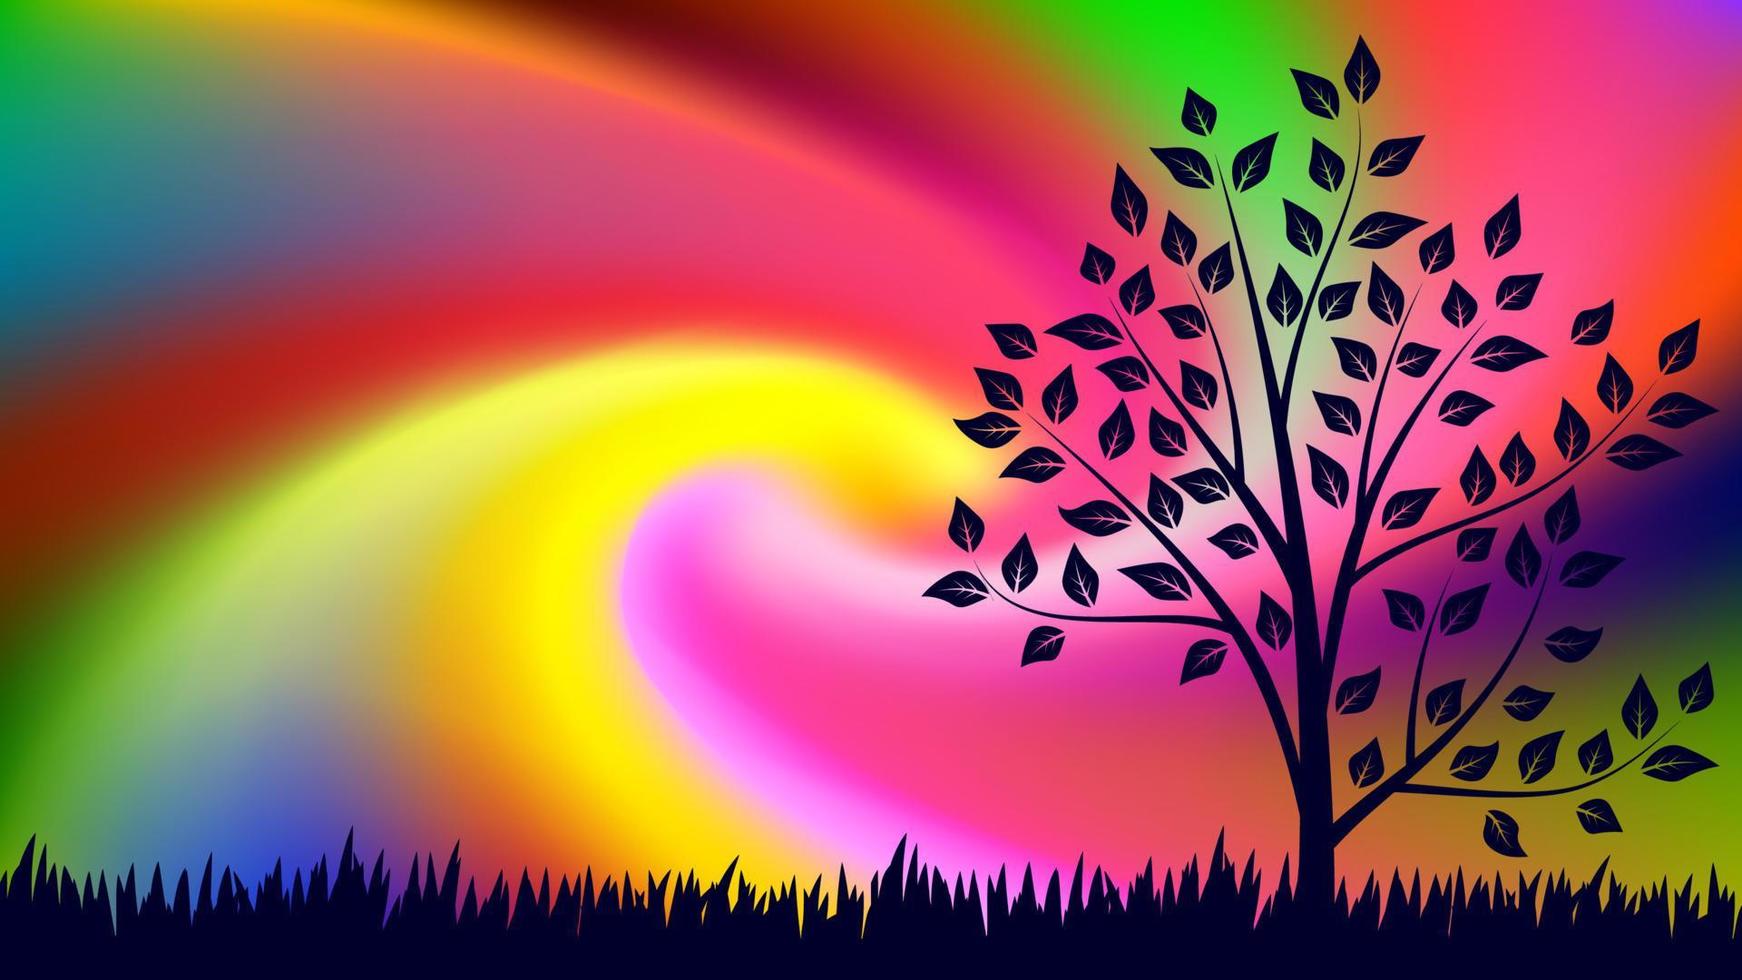 kleurrijke onscherpe achtergrond met gras en boom. moderne abstracte gradiëntkaart. zakelijke affiche. vector